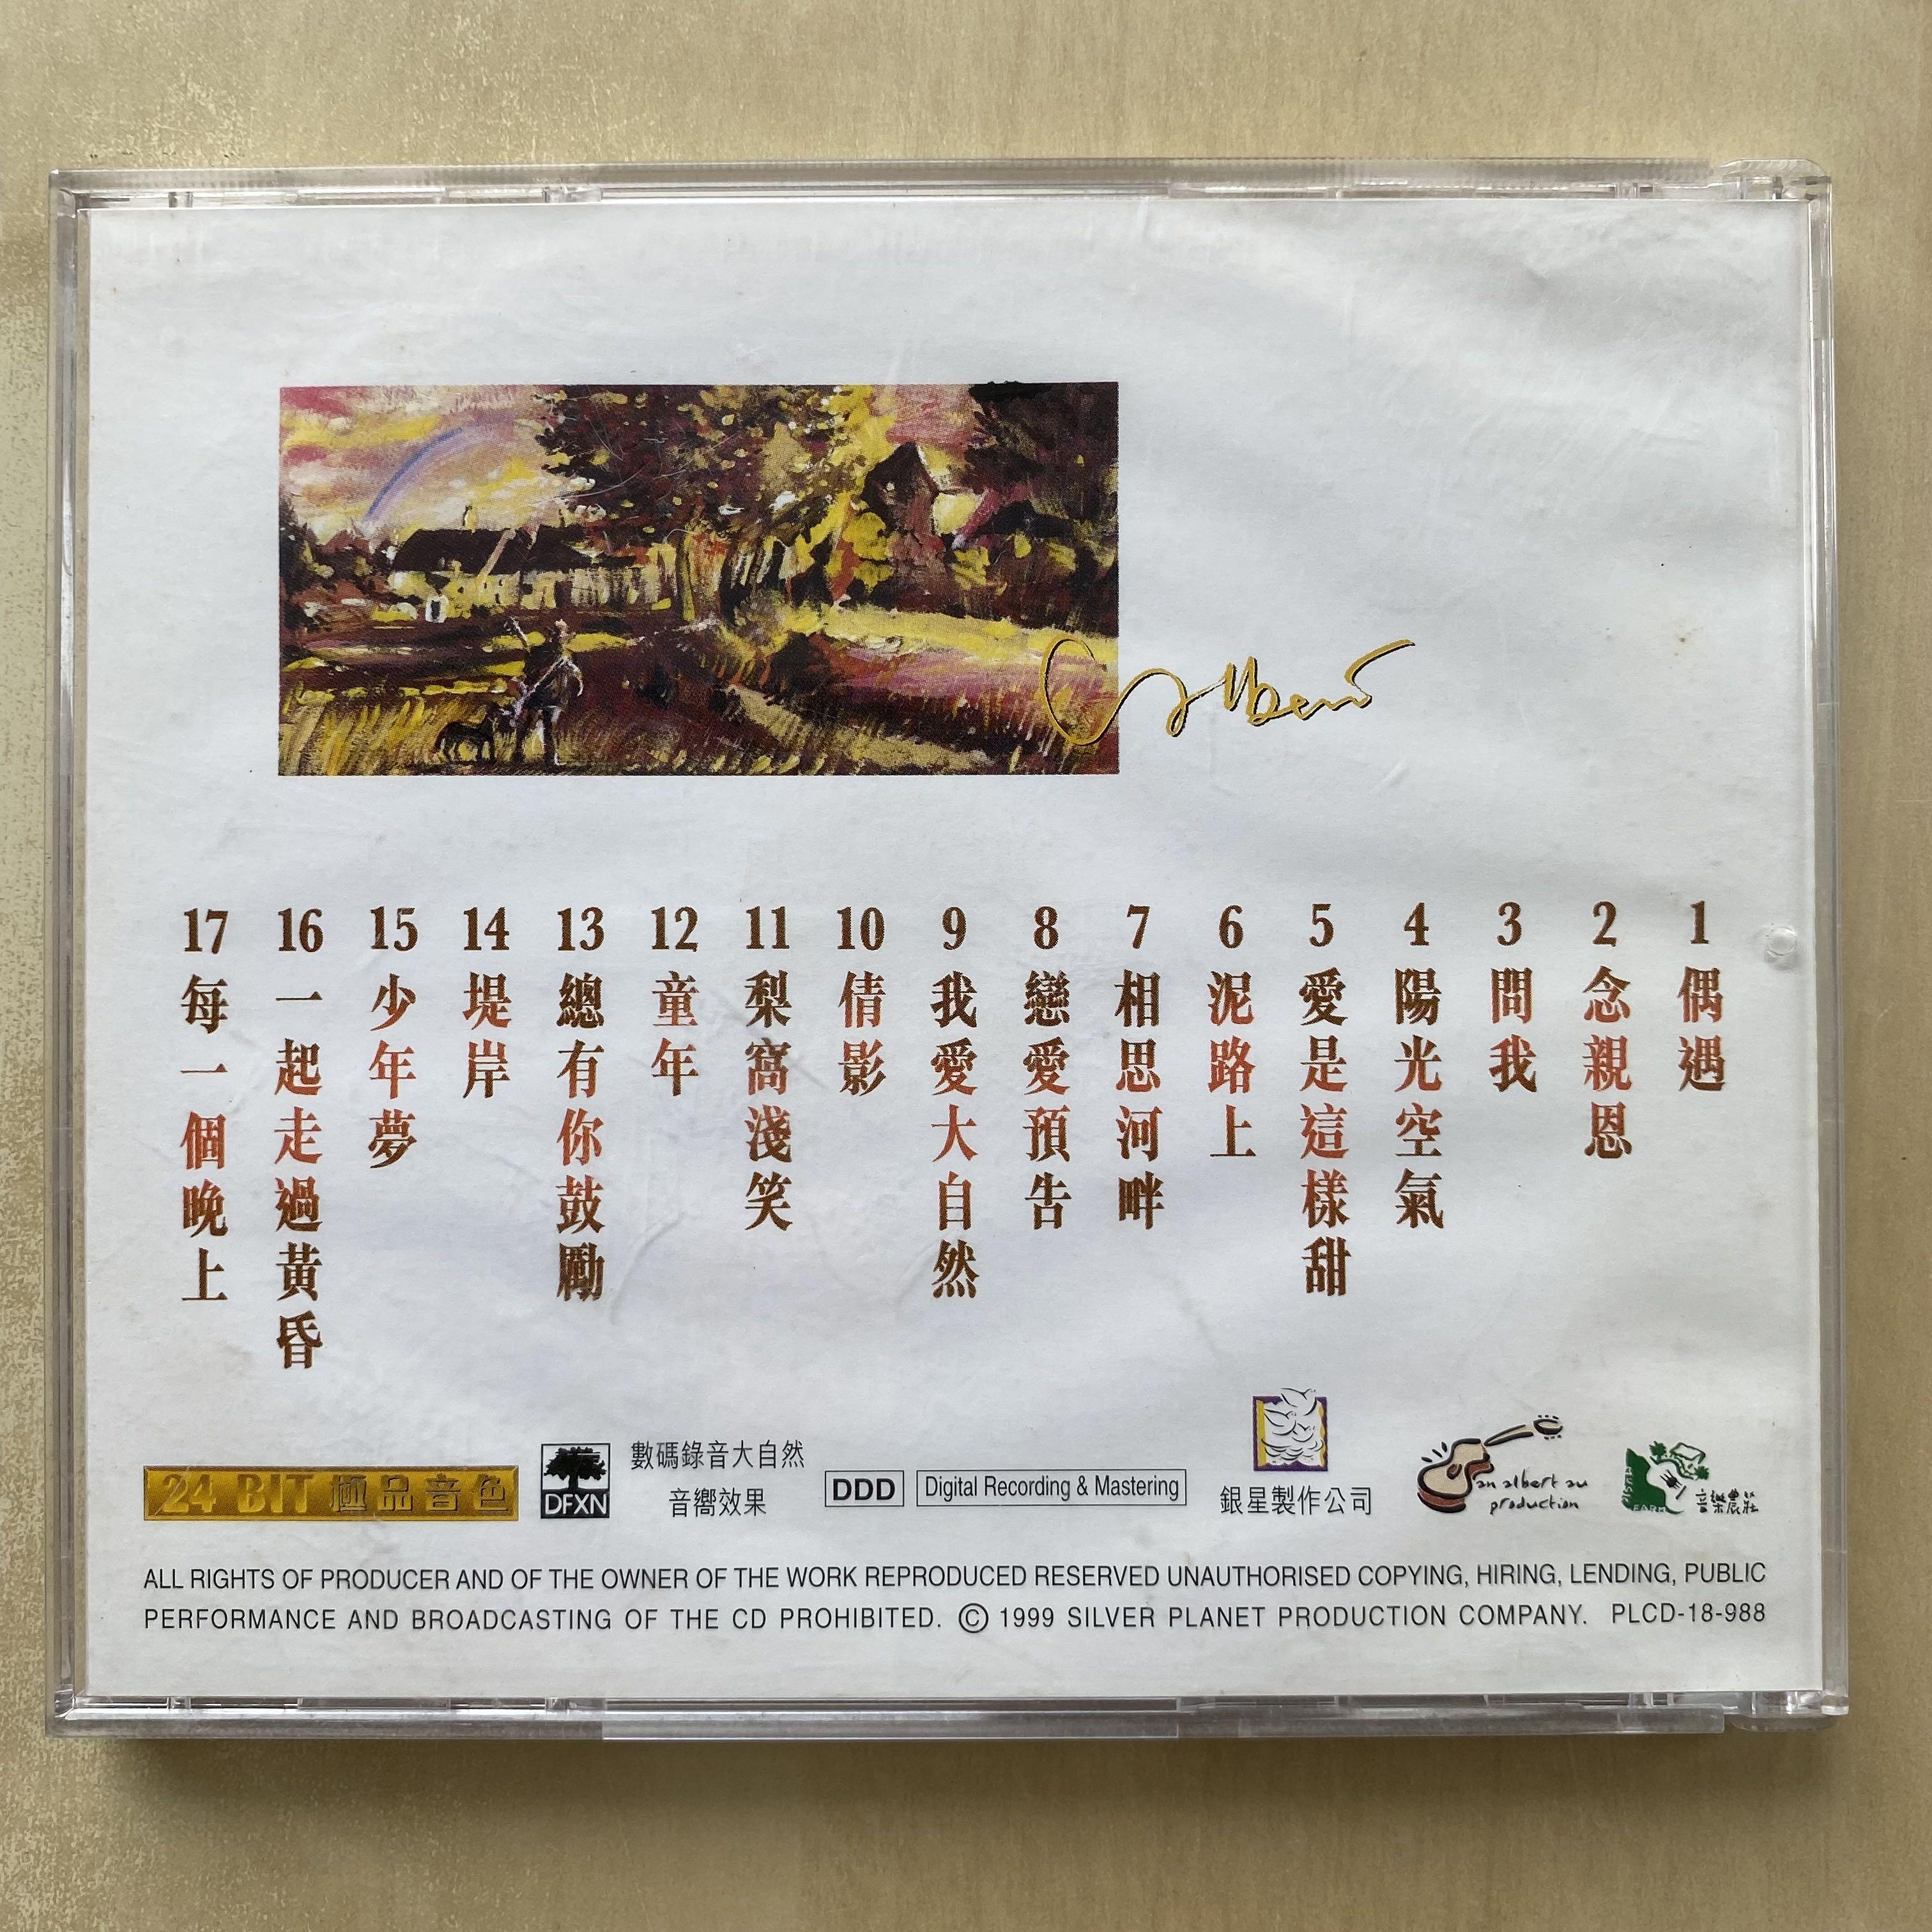 CD丨區瑞強民歌味道II Albert Au, 興趣及遊戲, 音樂、樂器& 配件, 音樂 